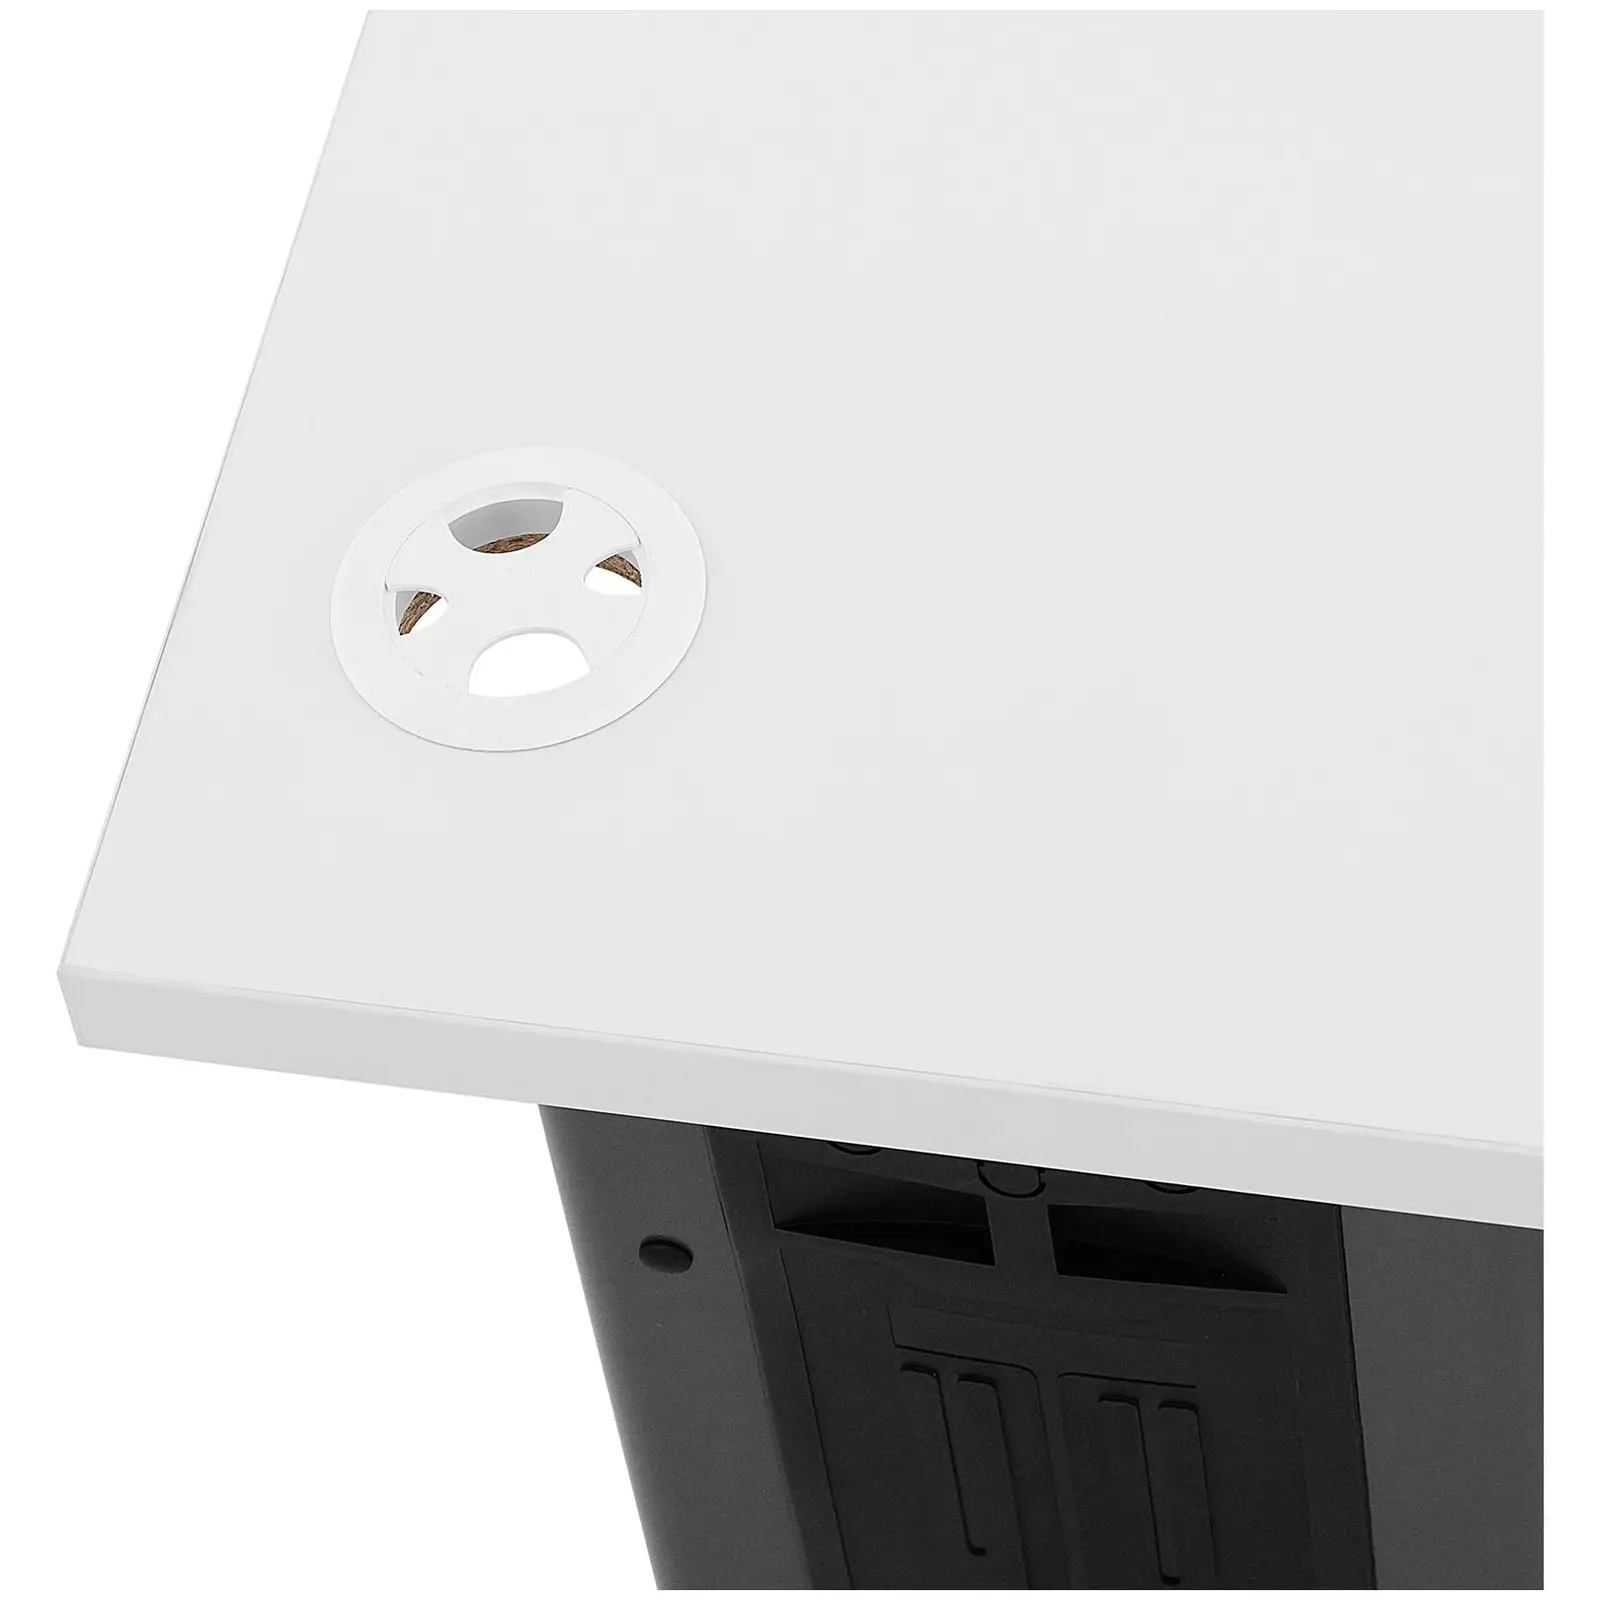 Kancelársky stôl - 120 x 73 cm - biela/sivá farba